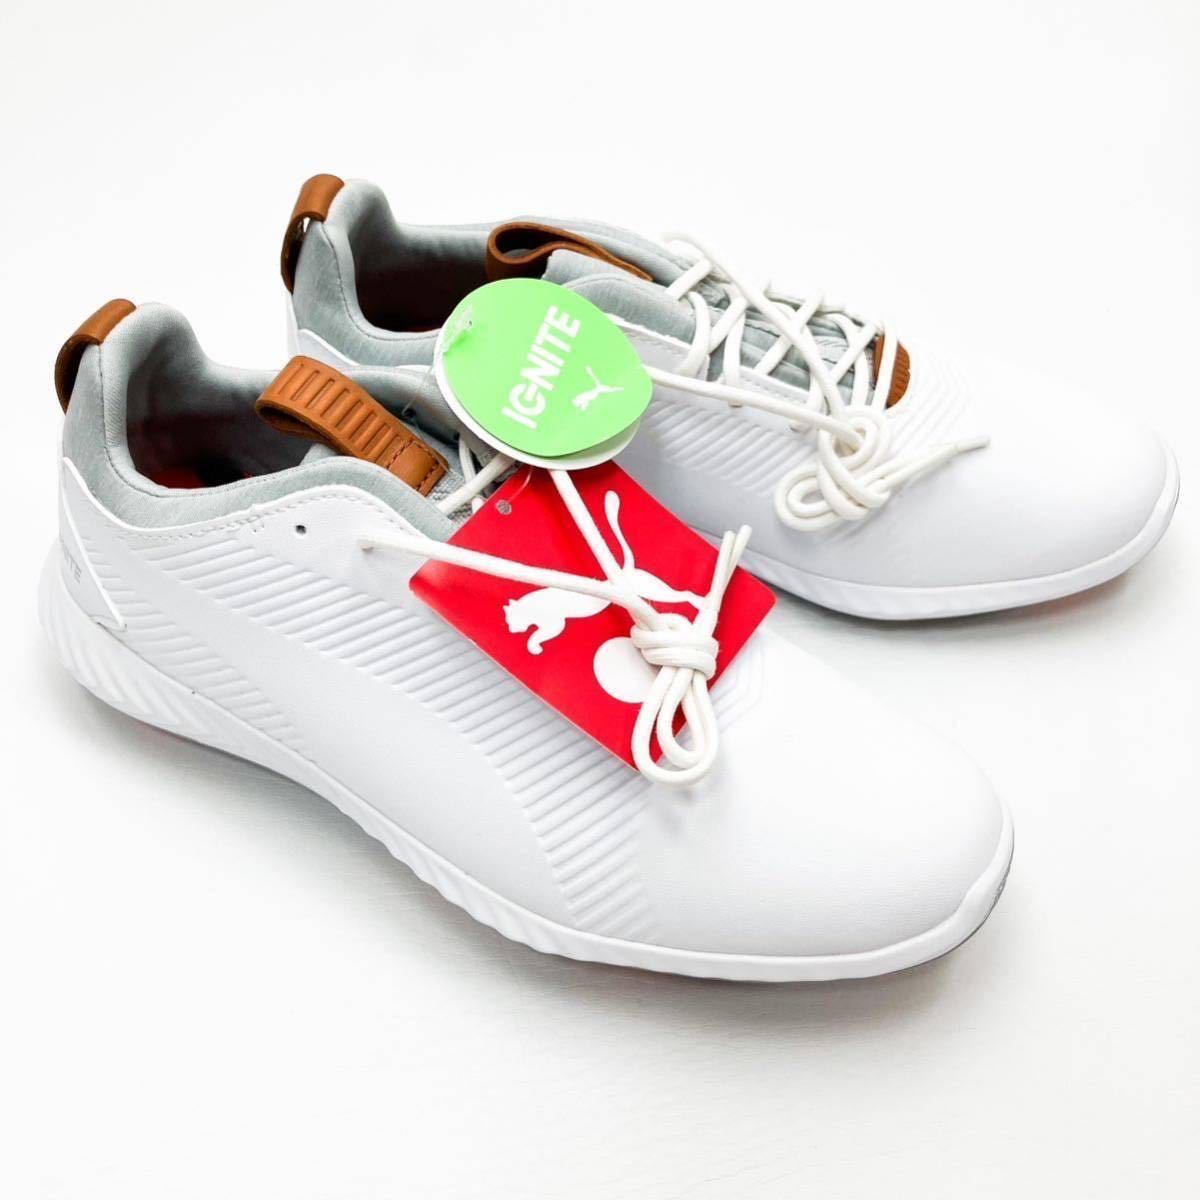 新品 未使用 PUMA プーマ レディース メンズ ゴルフシューズ 23.0cm ホワイト グレー シンプル ロゴマーク golf 靴紐 イグナイト A74